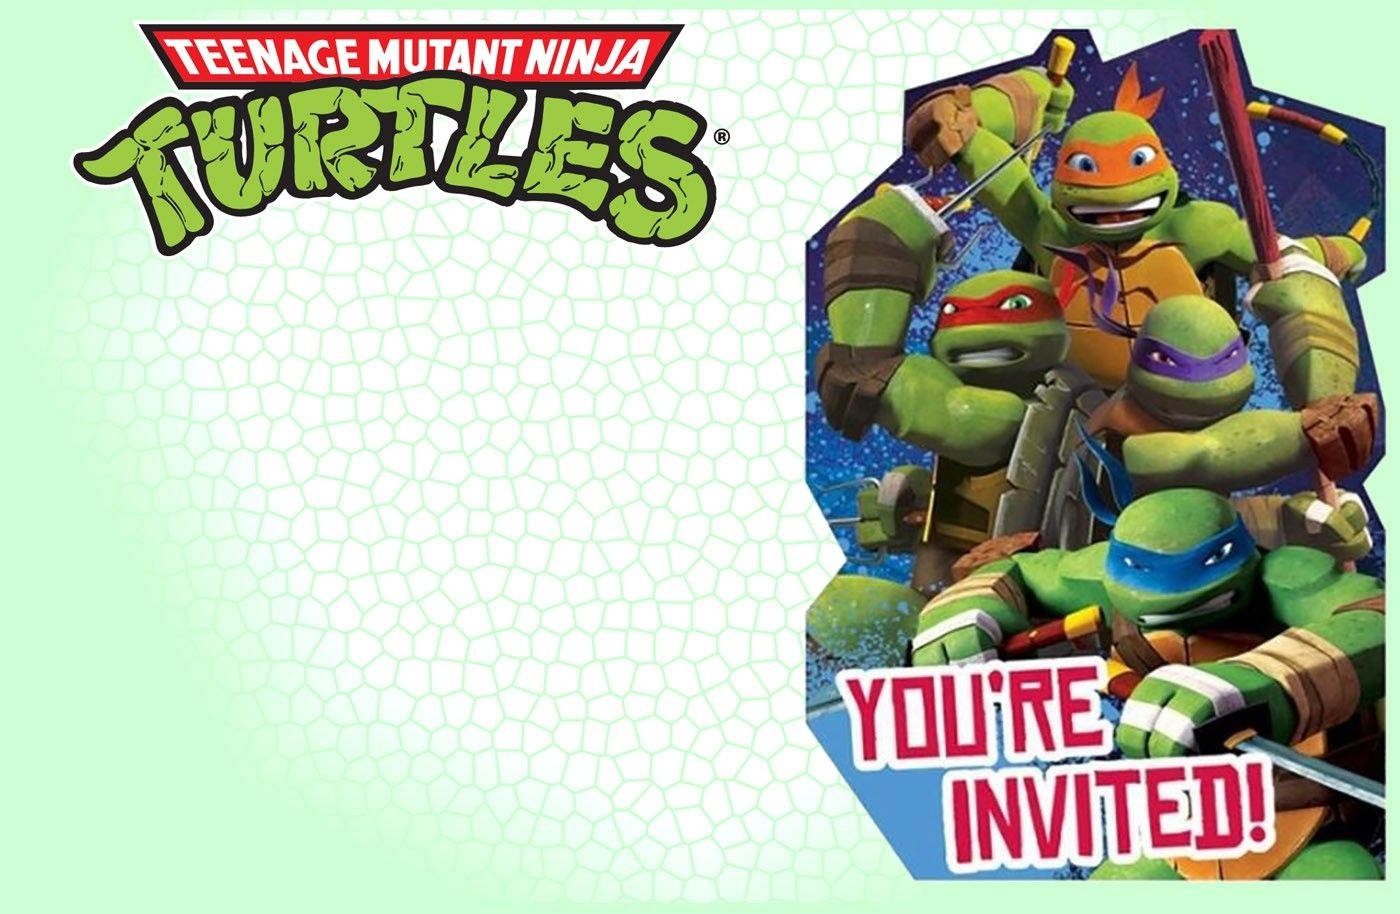 Editable Ninja Turtle Invitation Template | Tkb Printables In 2019 - Free Printable Tmnt Birthday Party Invitations